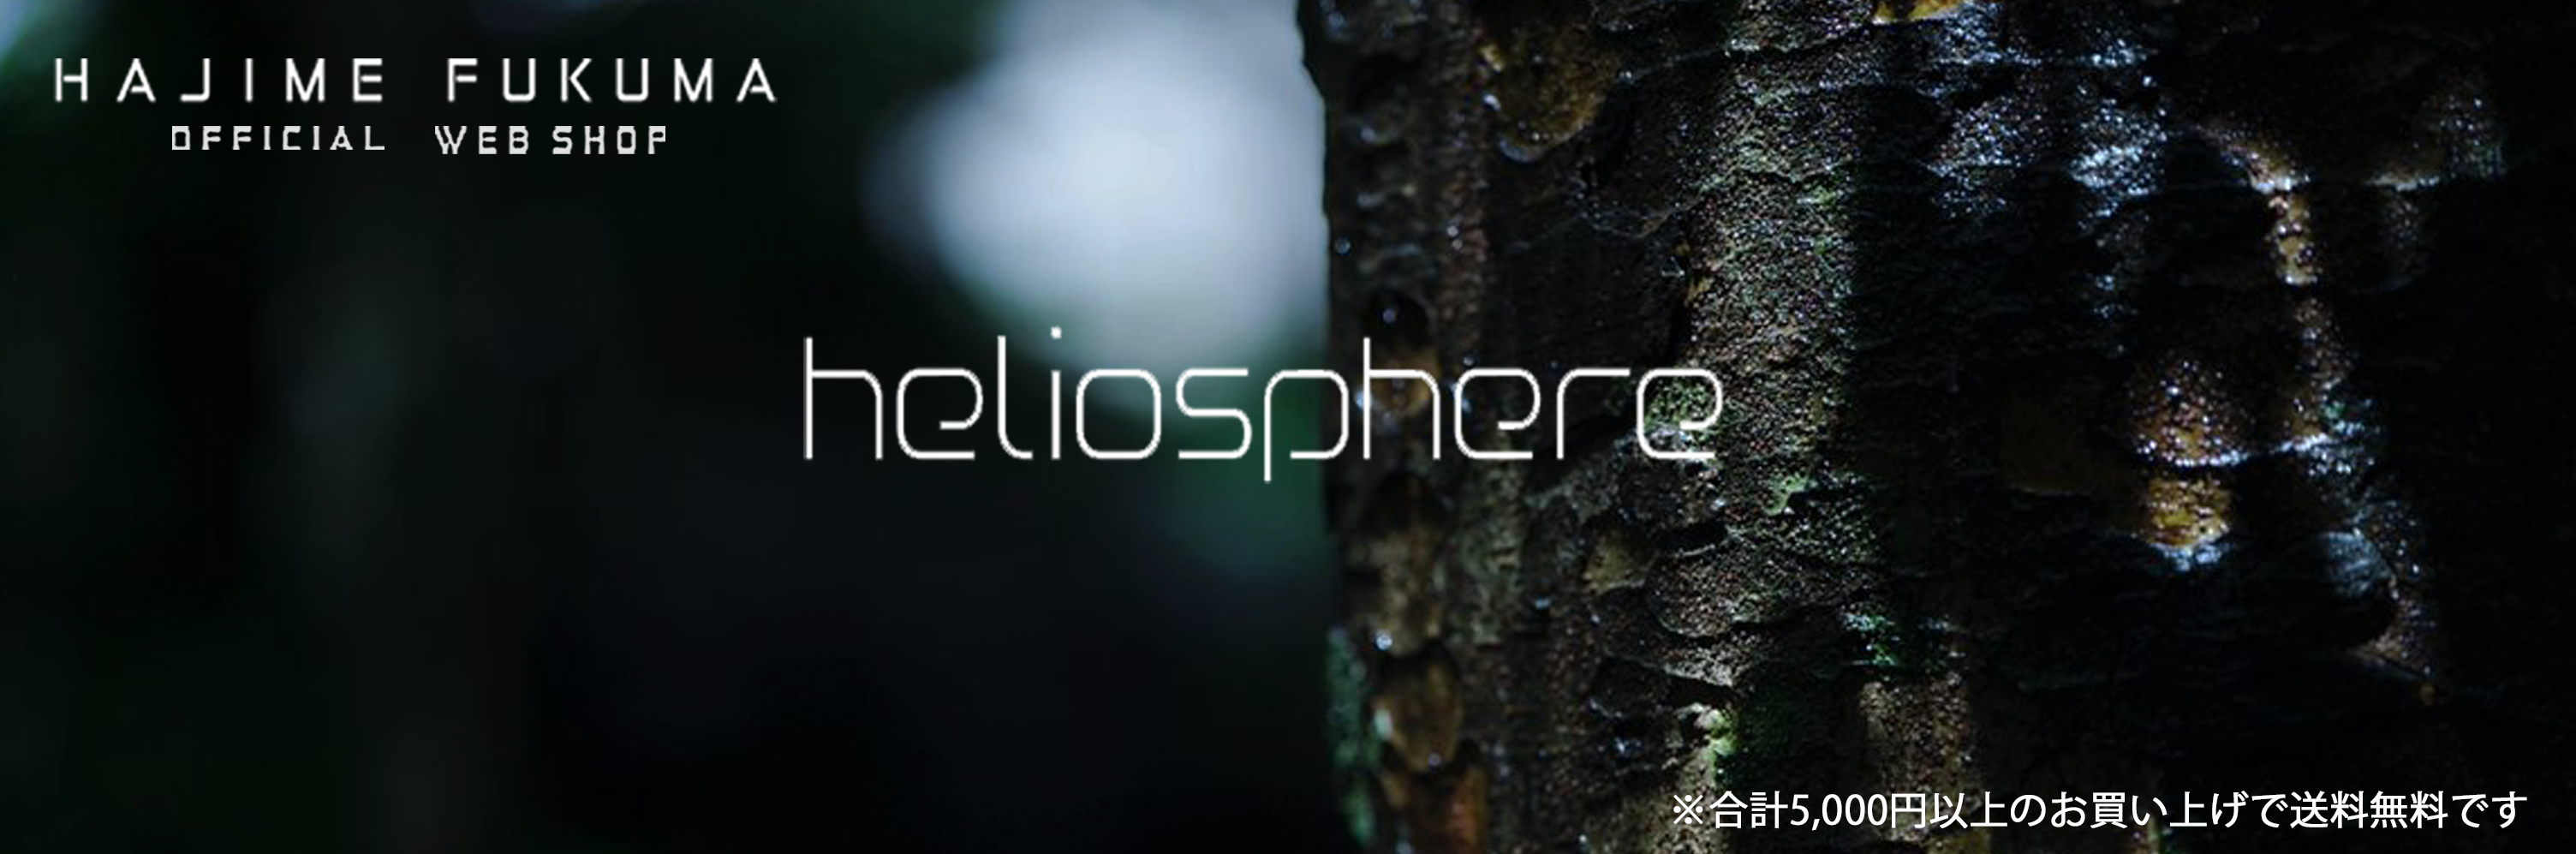 福間創オフィシャルウェブショップ『heliosphere』※5,000円以上のお買い上げで送料無料です。